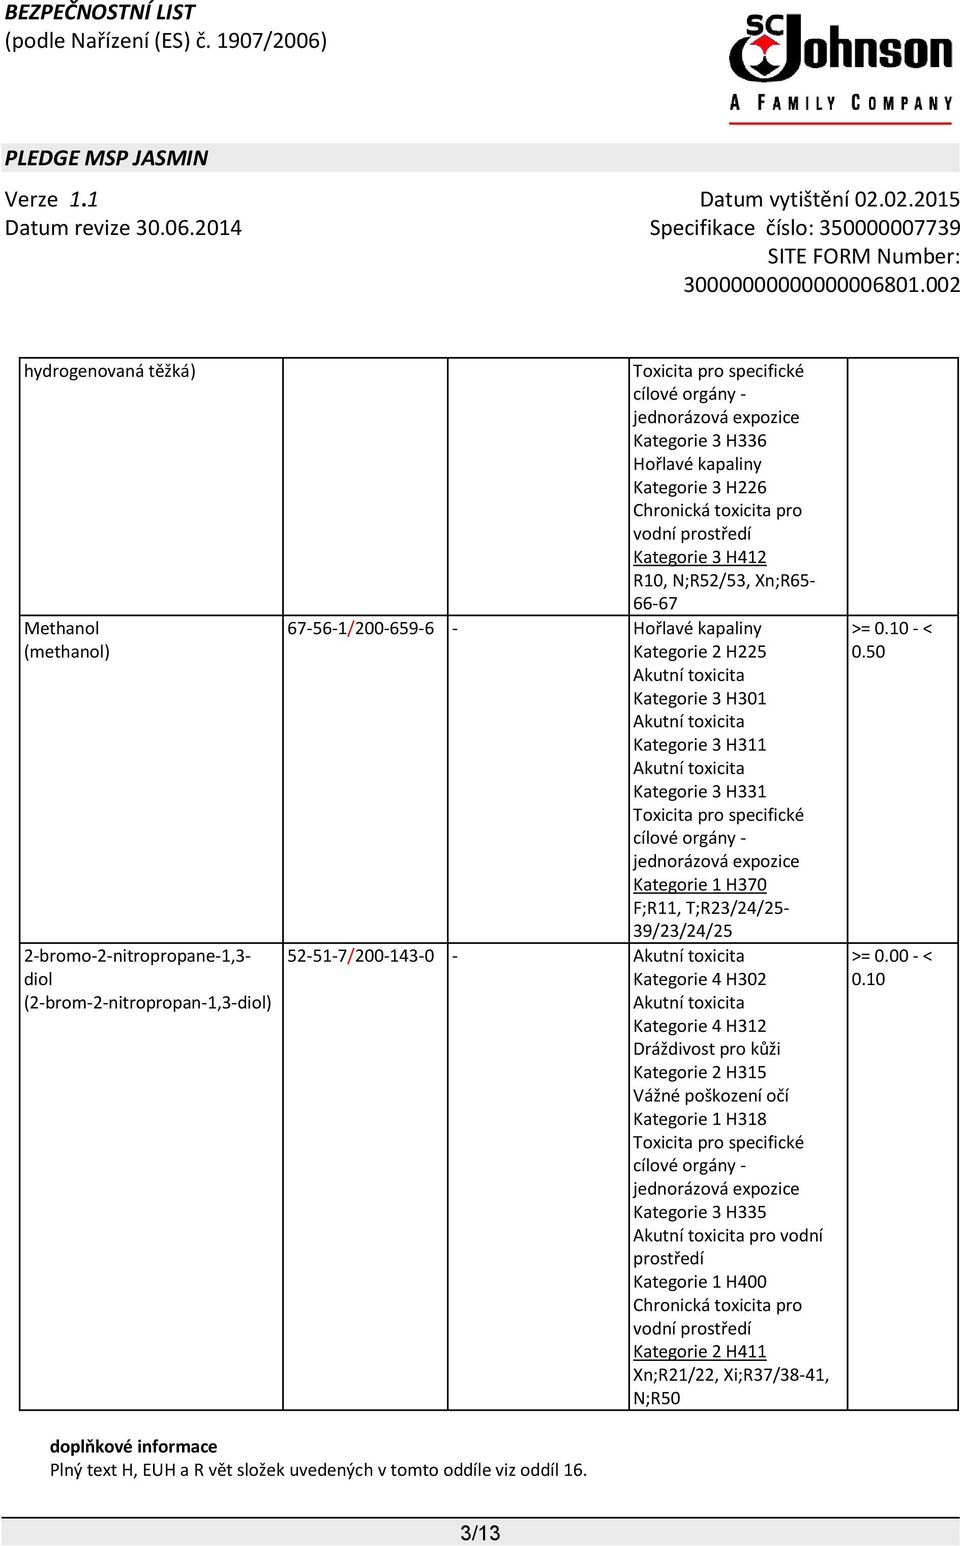 Kategorie 3 H331 Toxicita pro specifické cílové orgány - jednorázová expozice Kategorie 1 H370 F;R11, T;R23/24/25-39/23/24/25 52-51-7/200-143-0 - Akutní toxicita Kategorie 4 H302 Akutní toxicita